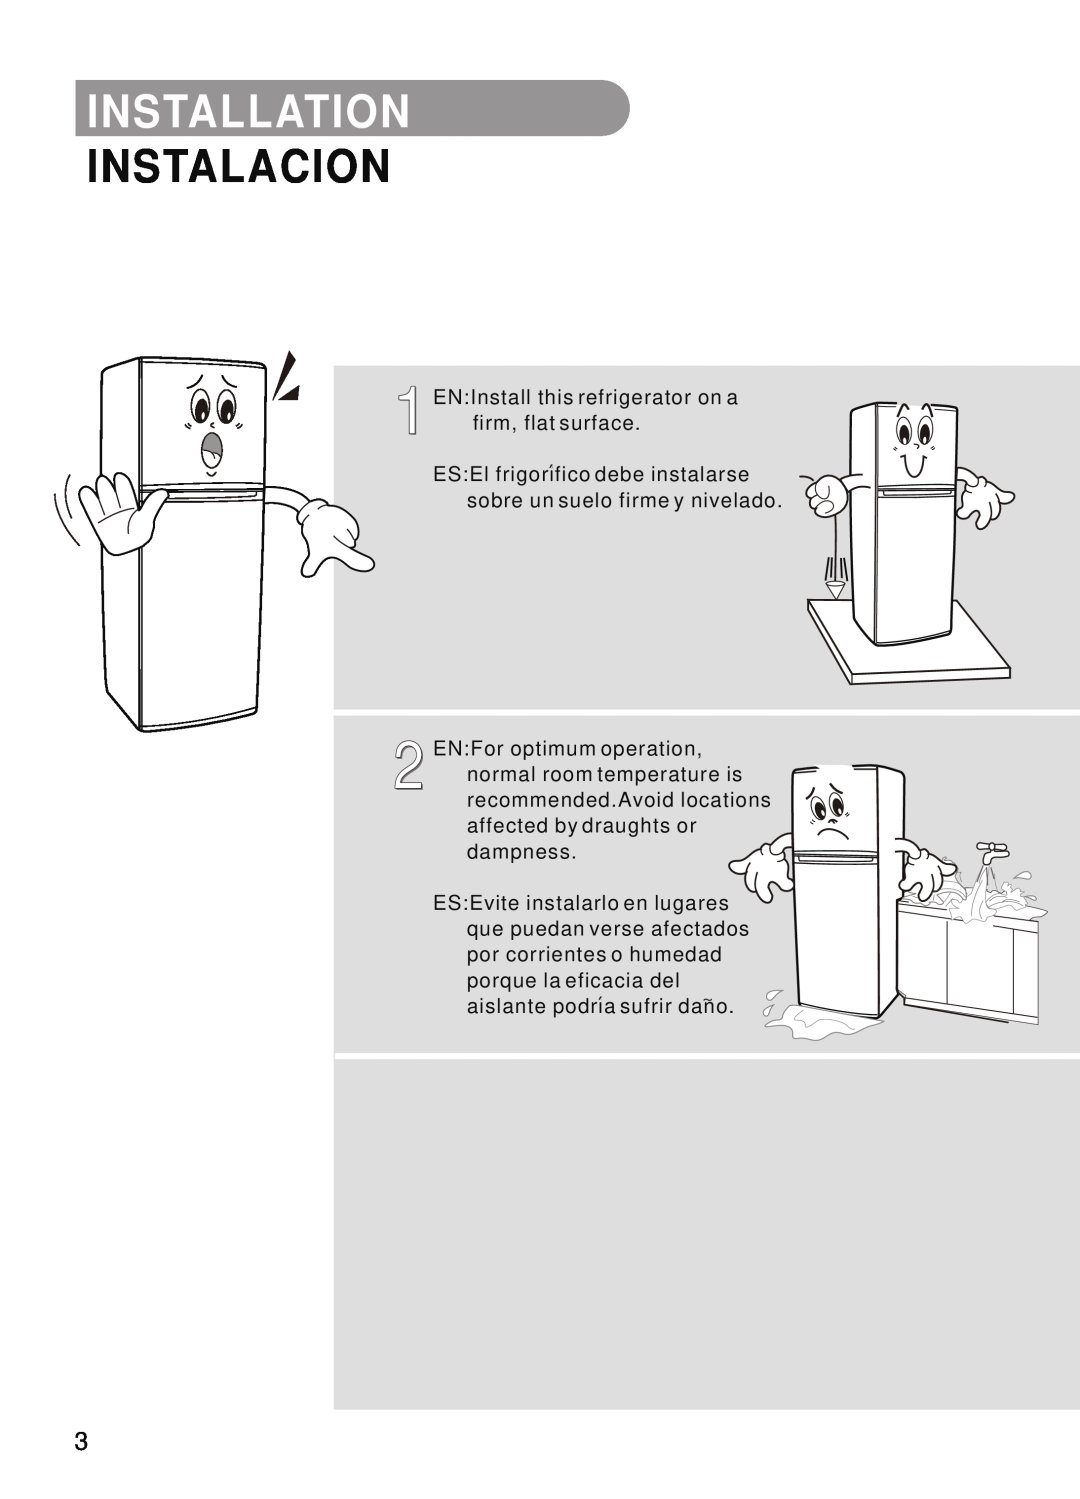 Samsung SR-32/33, SR-28/29, SR-42/43 manual Installation, Instalacion, EN Install this refrigerator on a, firm, flat surface 